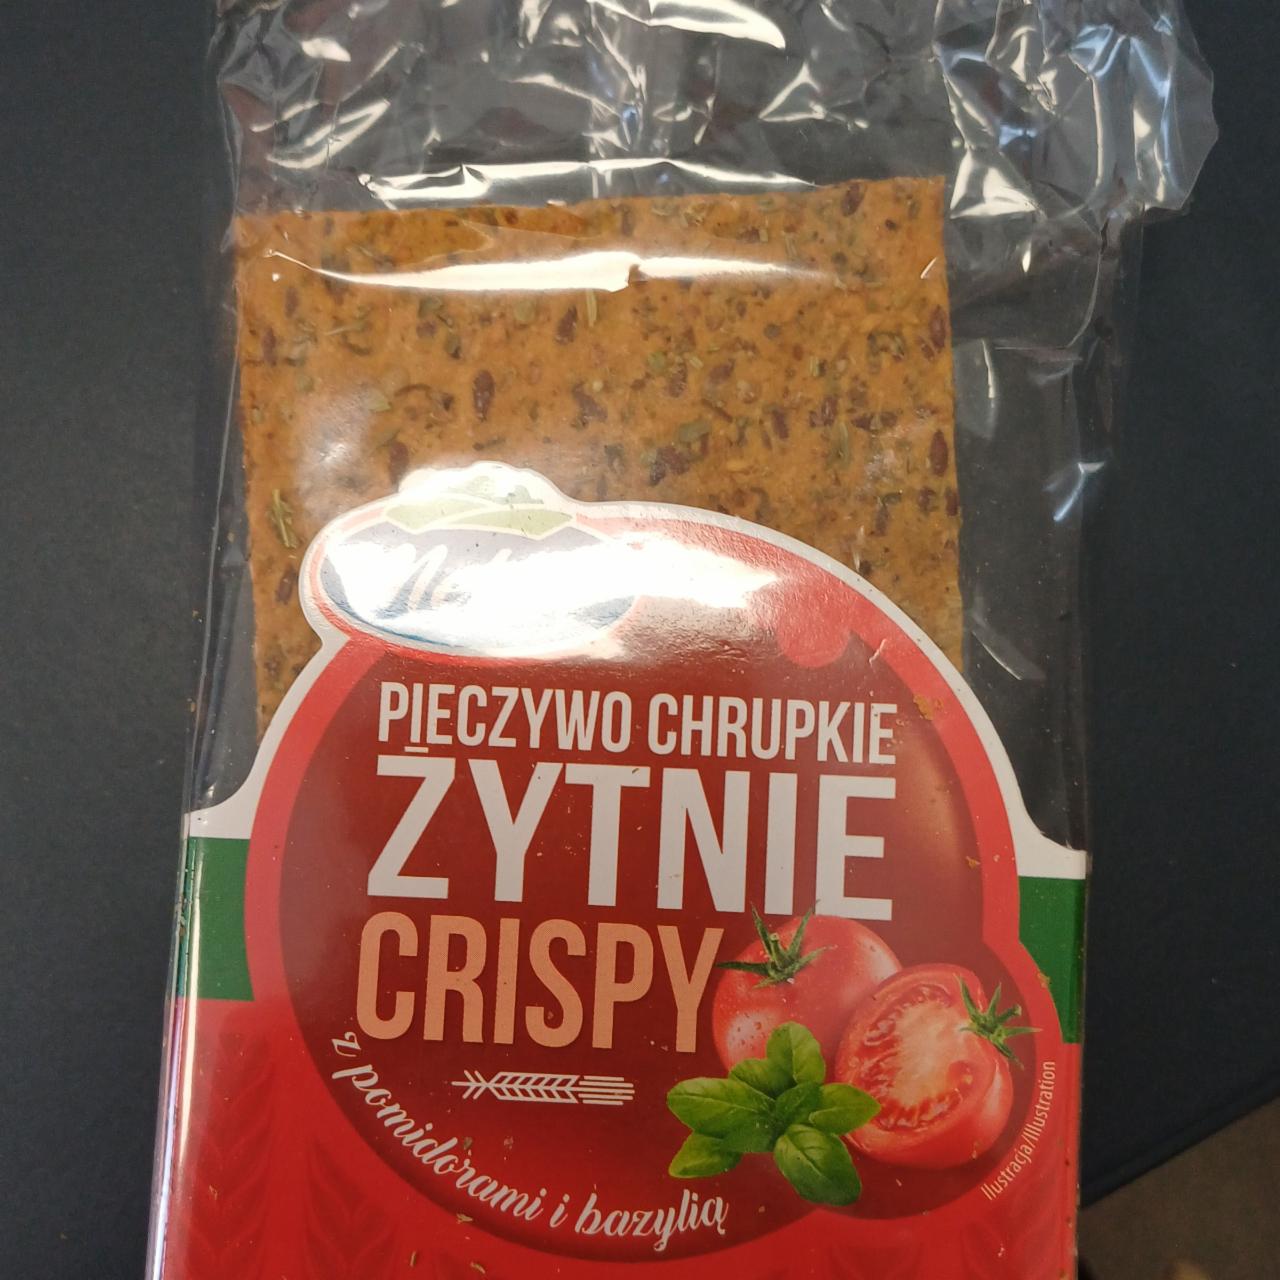 Fotografie - Pieczywo chrupkie Crispy żytnie z pomidorami i bazylią Melvit